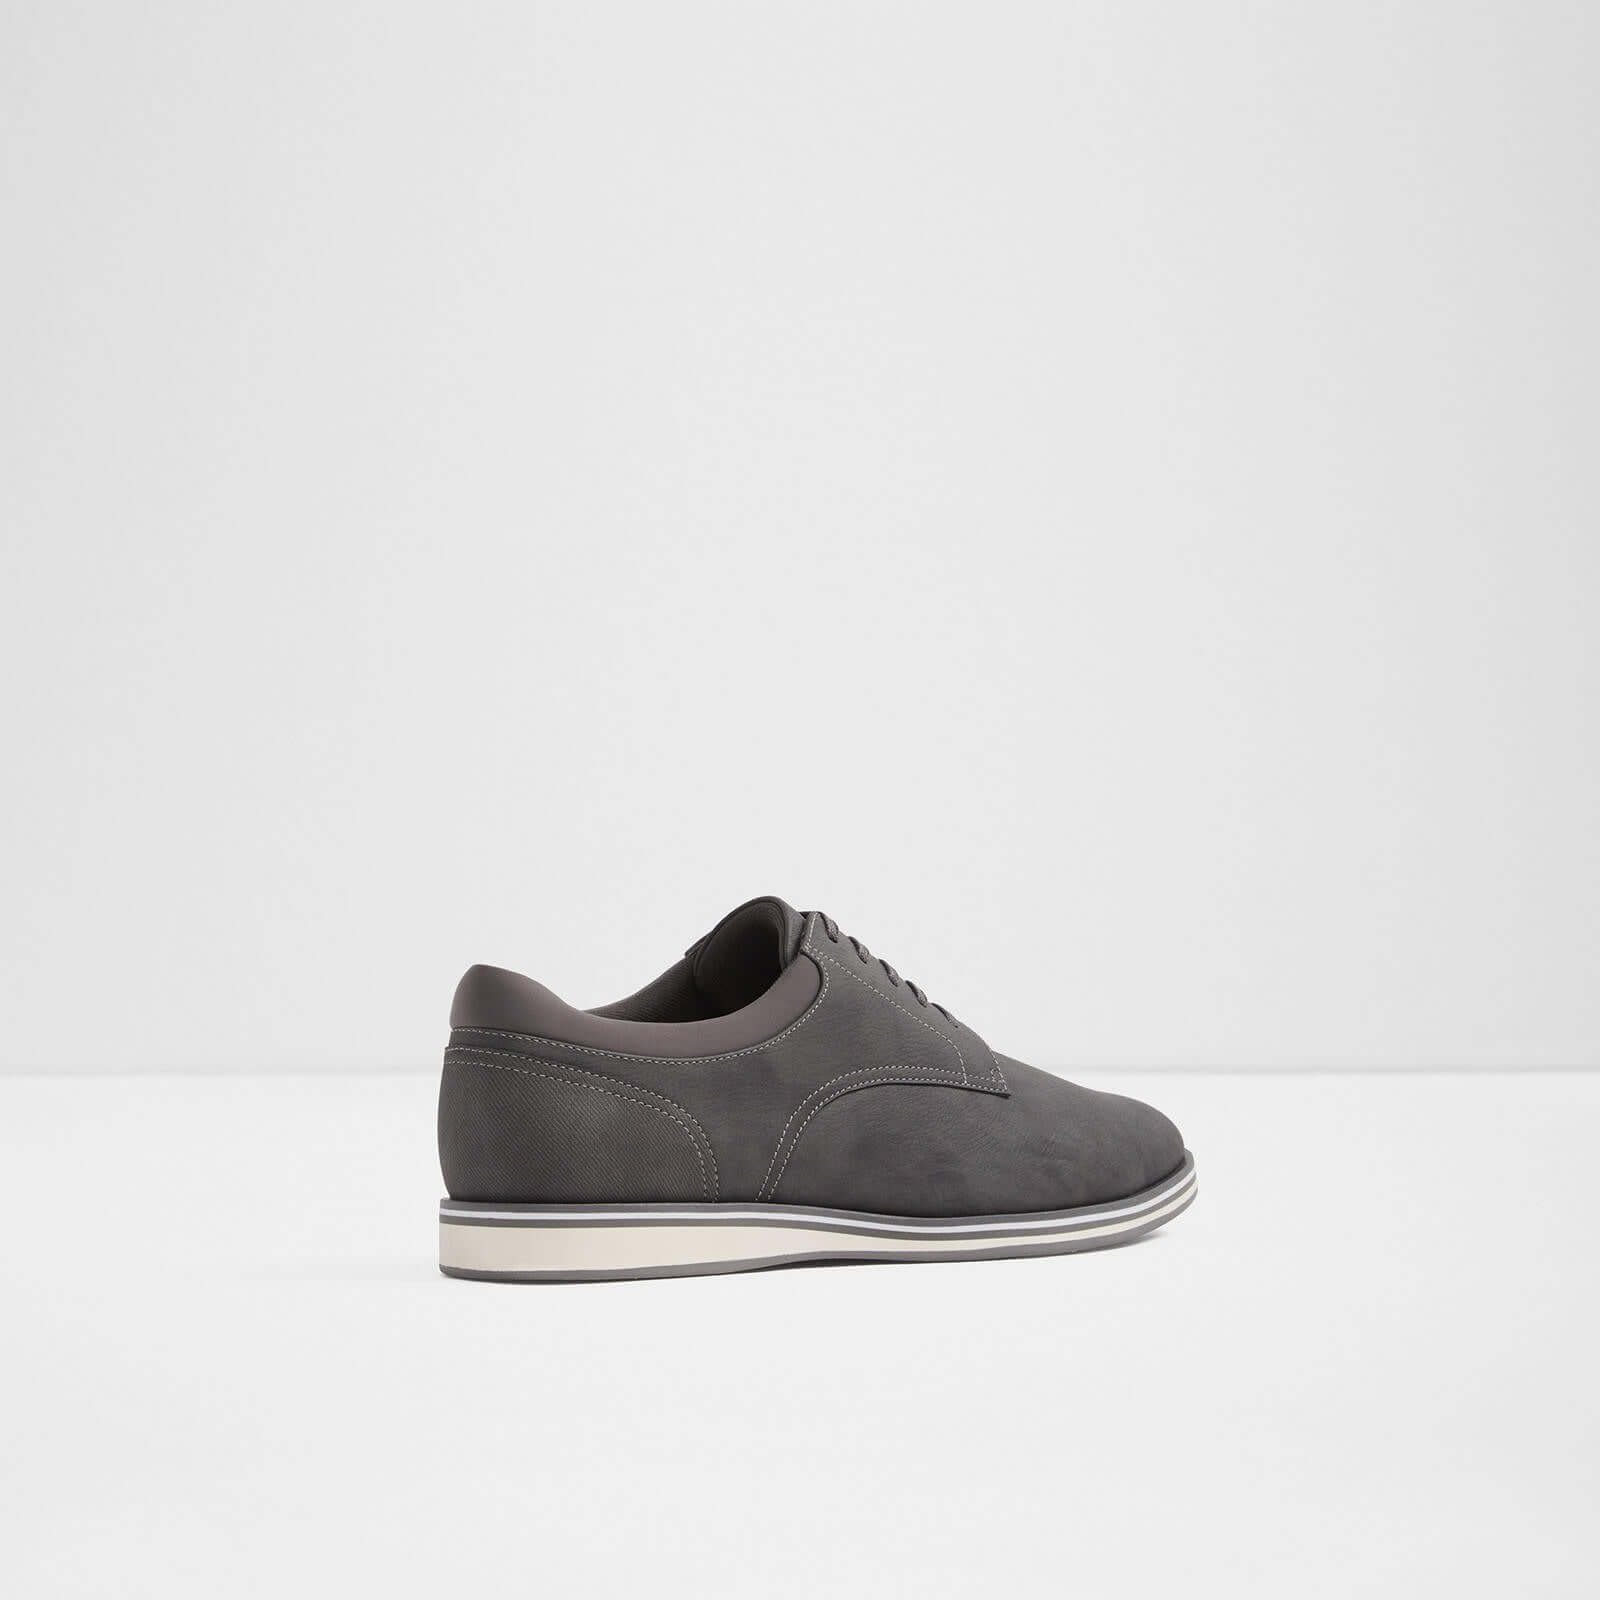 Aldo Up Cycia (Dark Grey) – ALDO Shoes UK